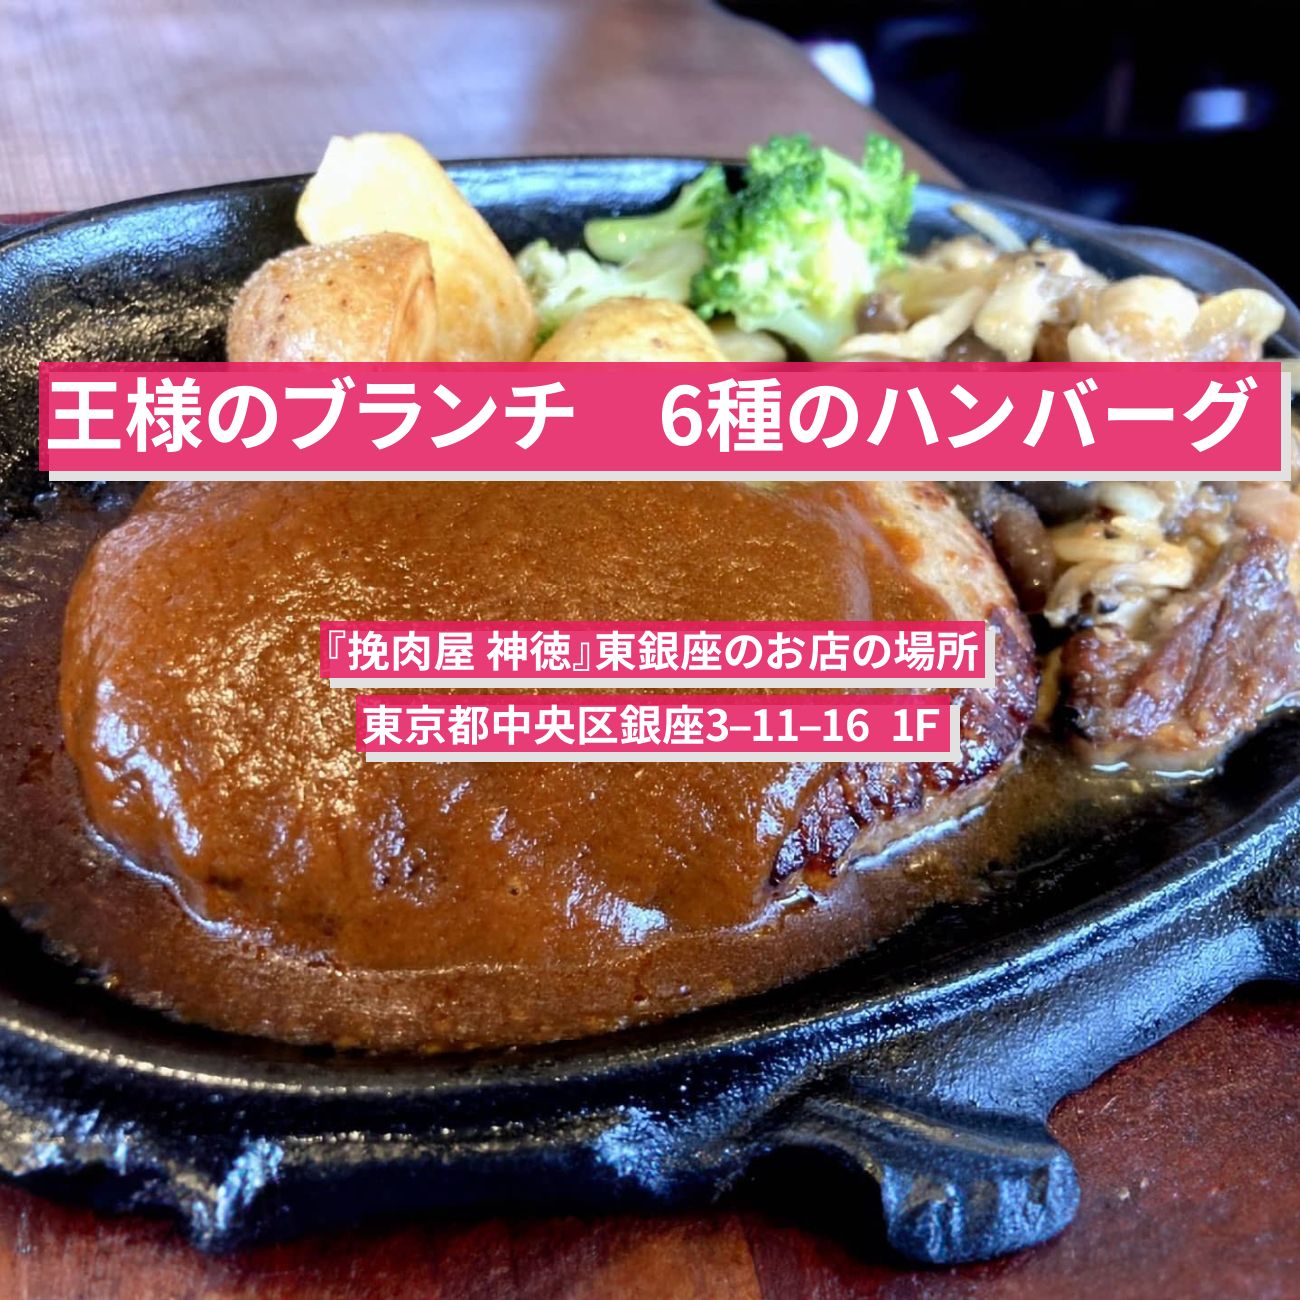 【王様のブランチ】6種から選べるハンバーグ『挽肉屋 神徳』東銀座のお店の場所